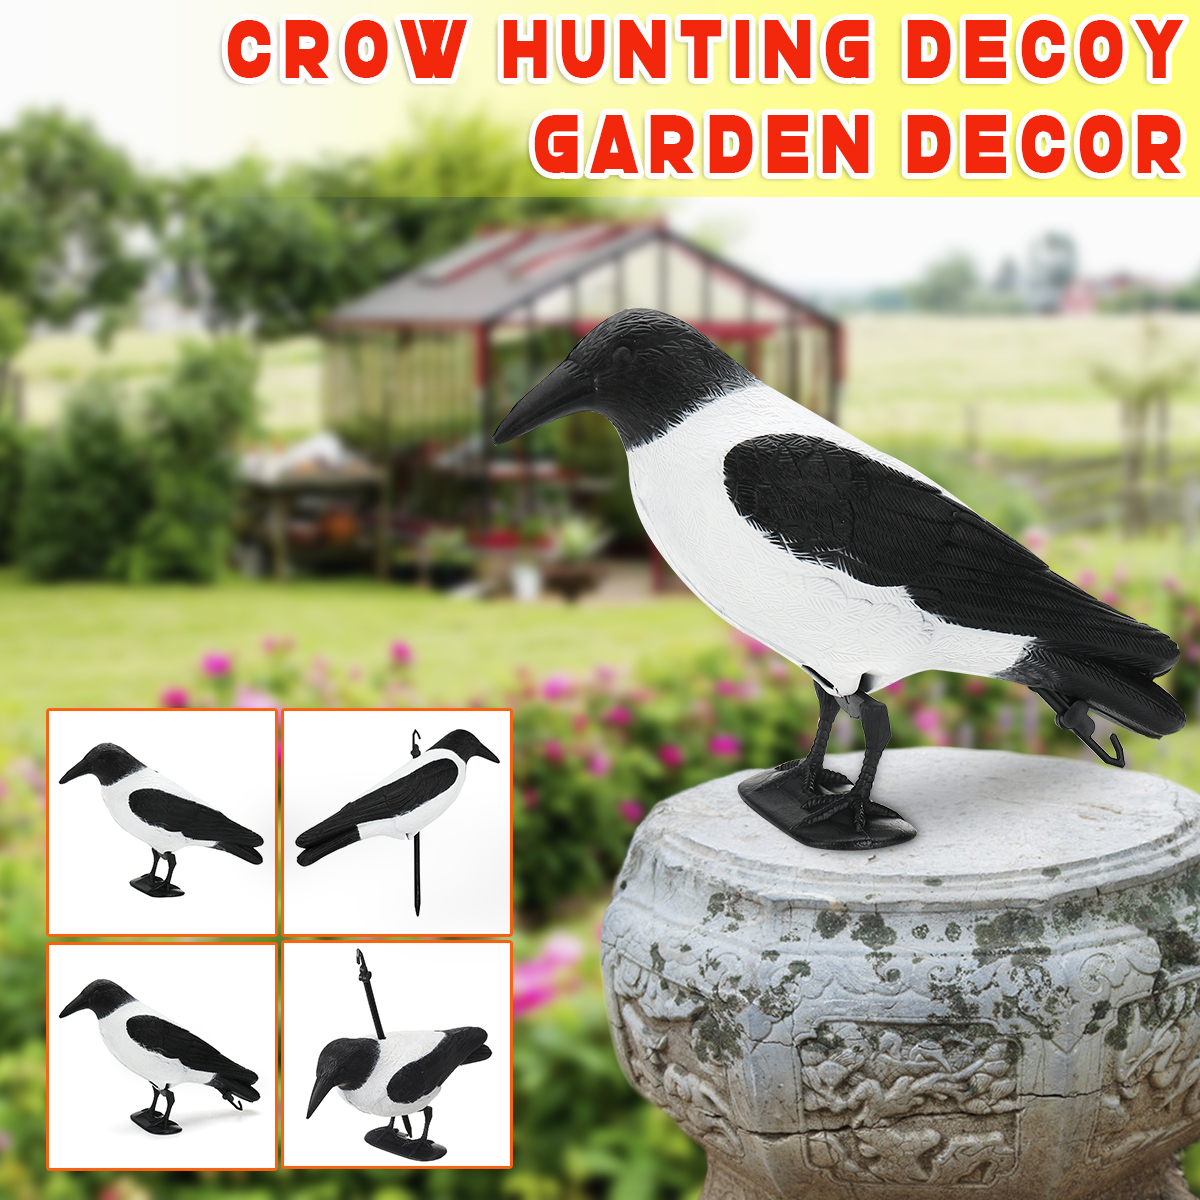 Crow-Hunting-Decoy-Bird-Deterrent-Scarer-Outdoor-Garden-Hunting-Equipment-1556629-1